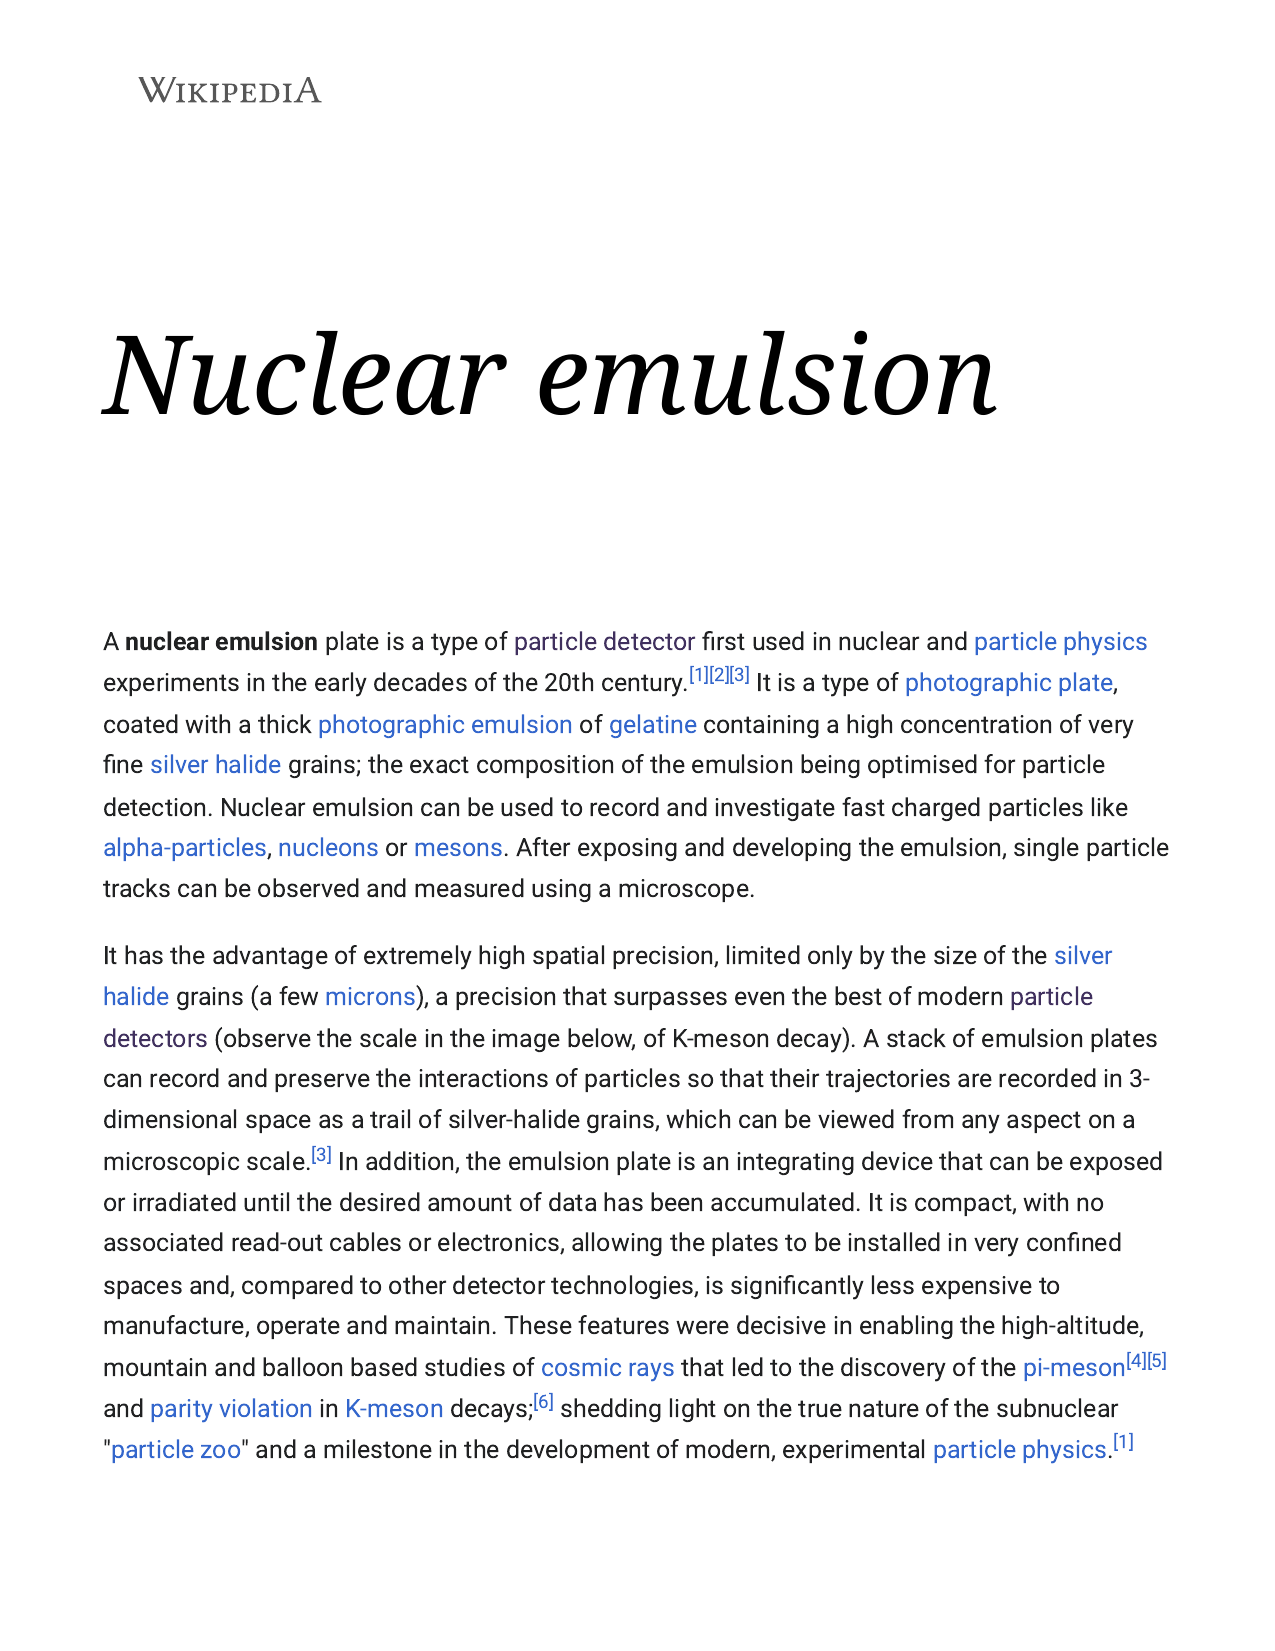 Emulsion - Wikipedia